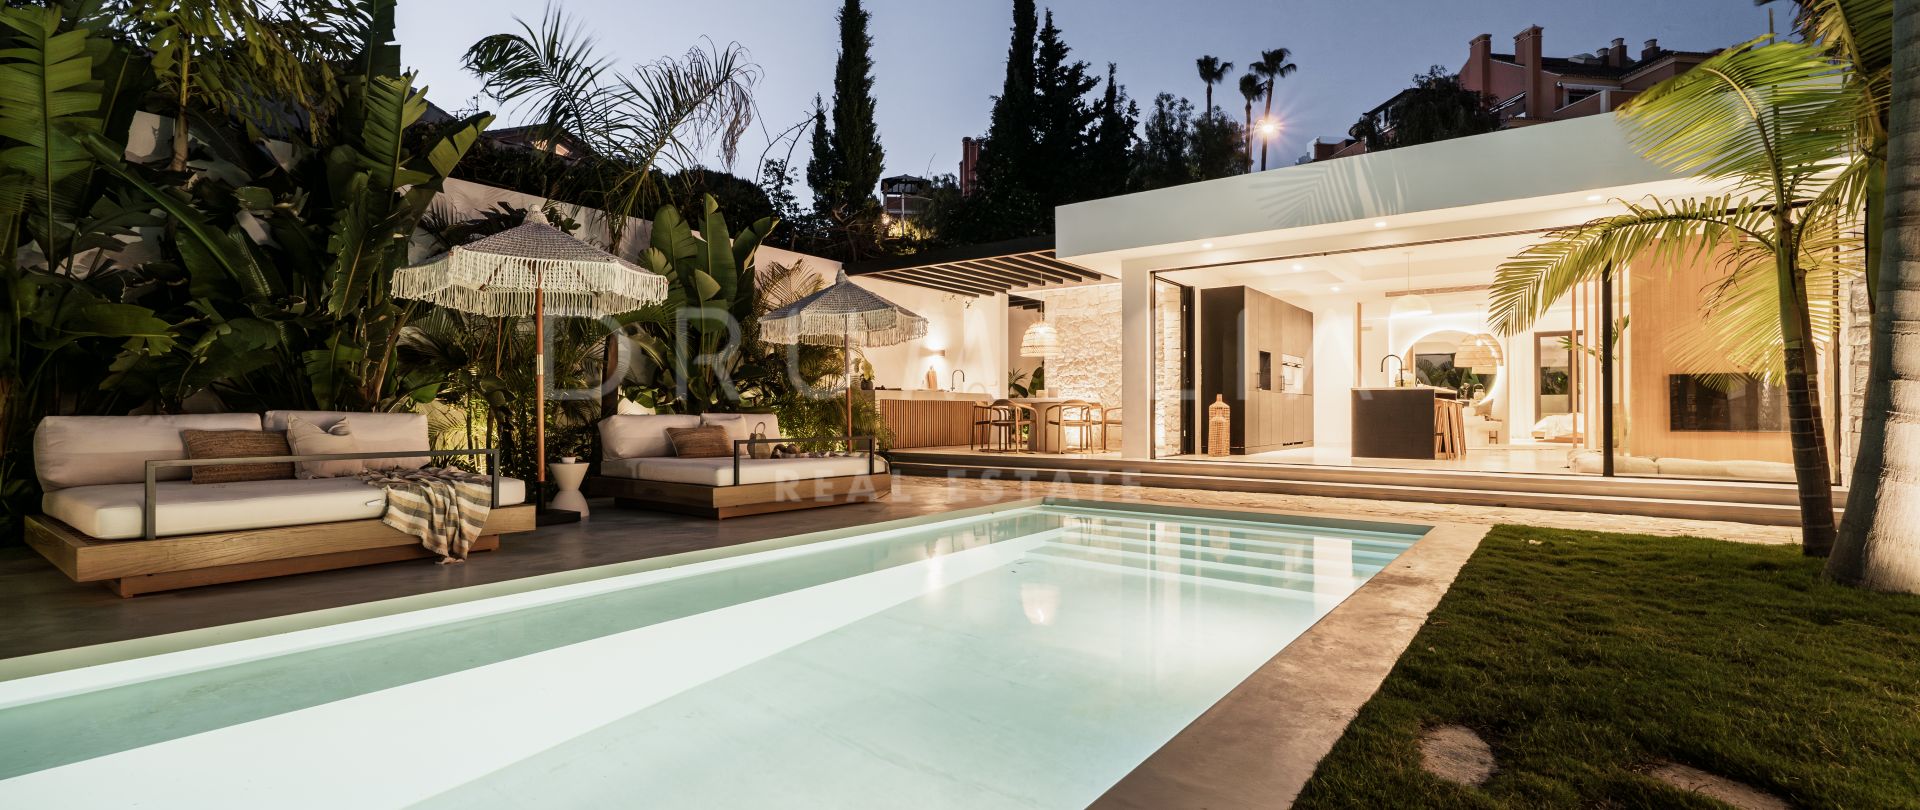 Atemberaubende neue Villa im balinesischen Stil in bester Lage in Nueva Andalucia, Marbella